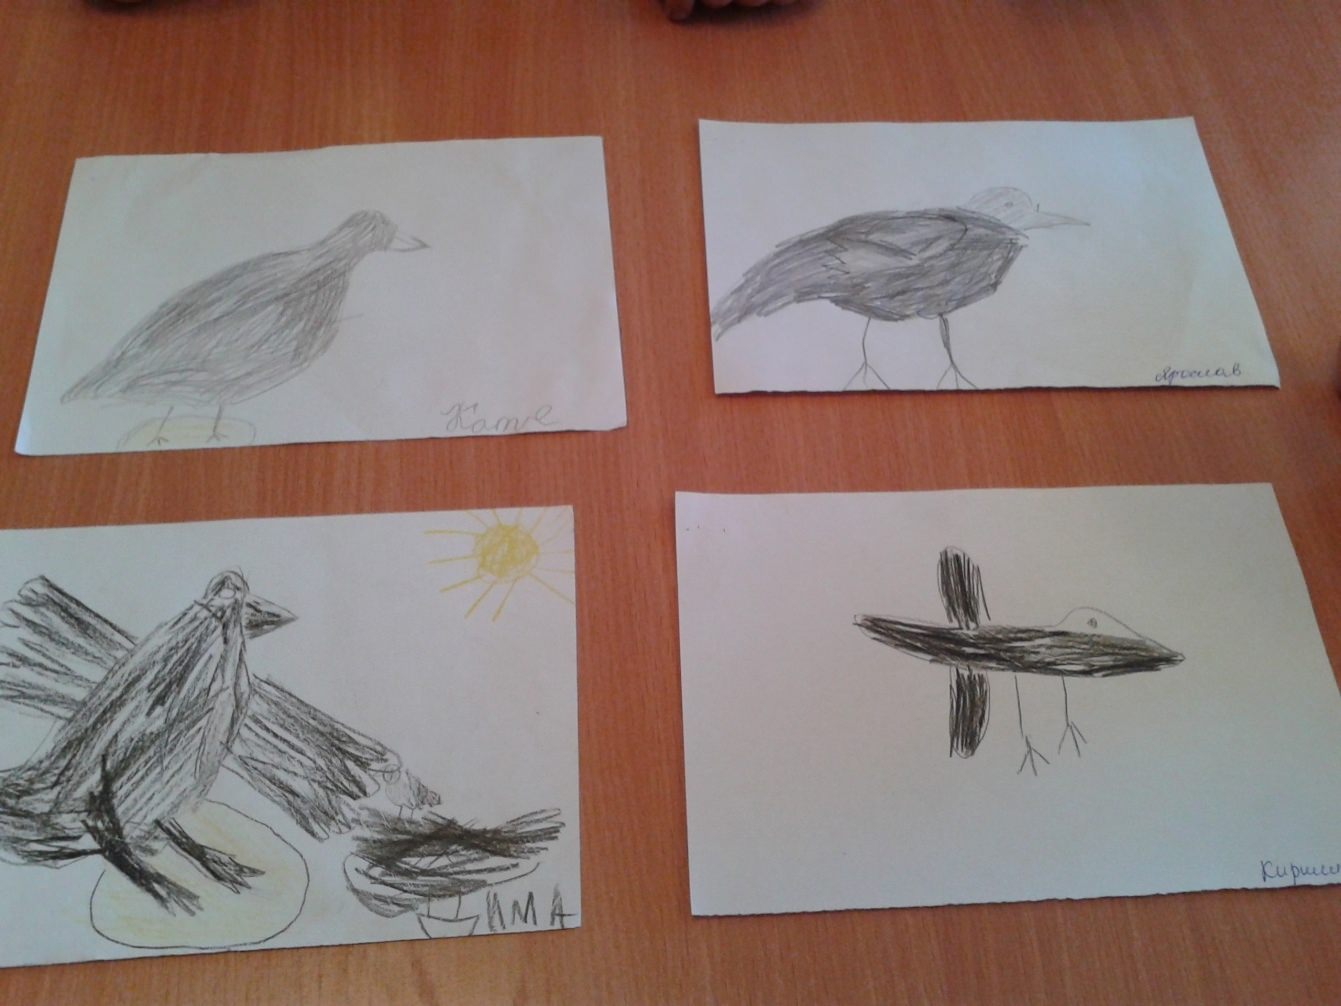 Рисование конспект перелетные птицы